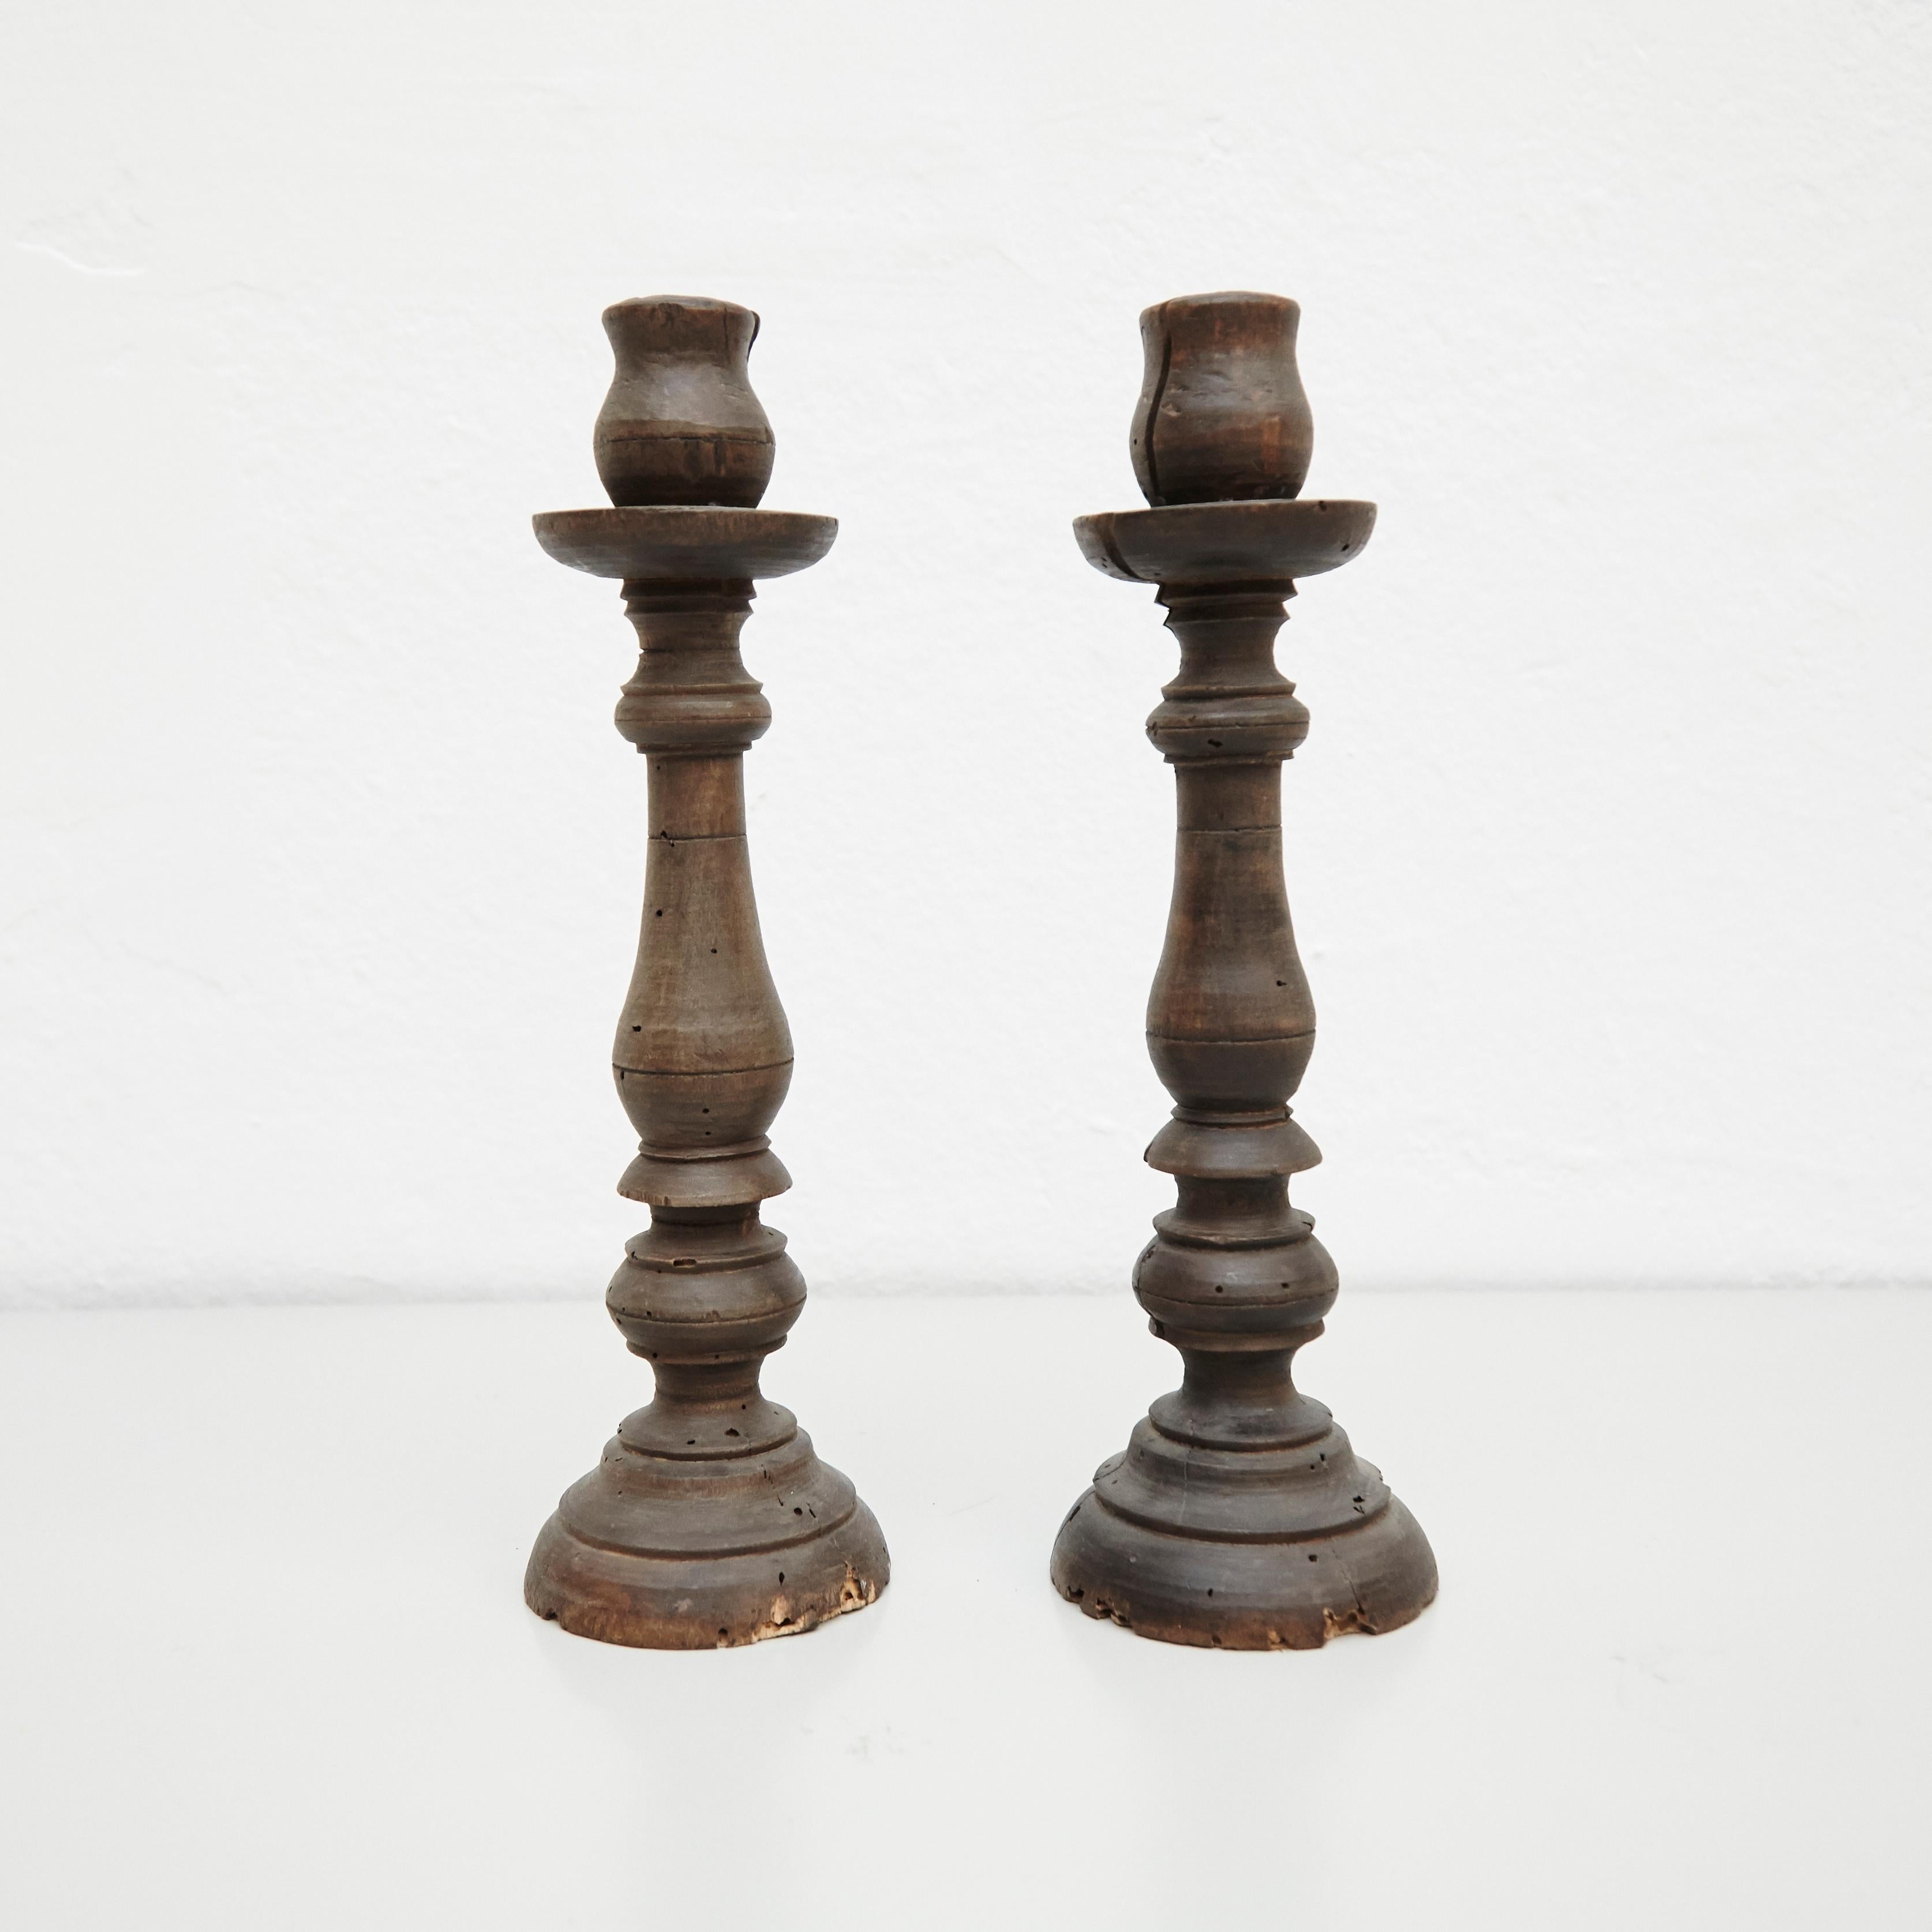 Mitte des 19. Jahrhunderts ein Paar beliebter traditioneller Kerzenleuchter aus Holz.
Von unbekanntem Hersteller, Frankreich.

Originaler Zustand mit geringen alters- und gebrauchsbedingten Abnutzungserscheinungen, der eine schöne Patina